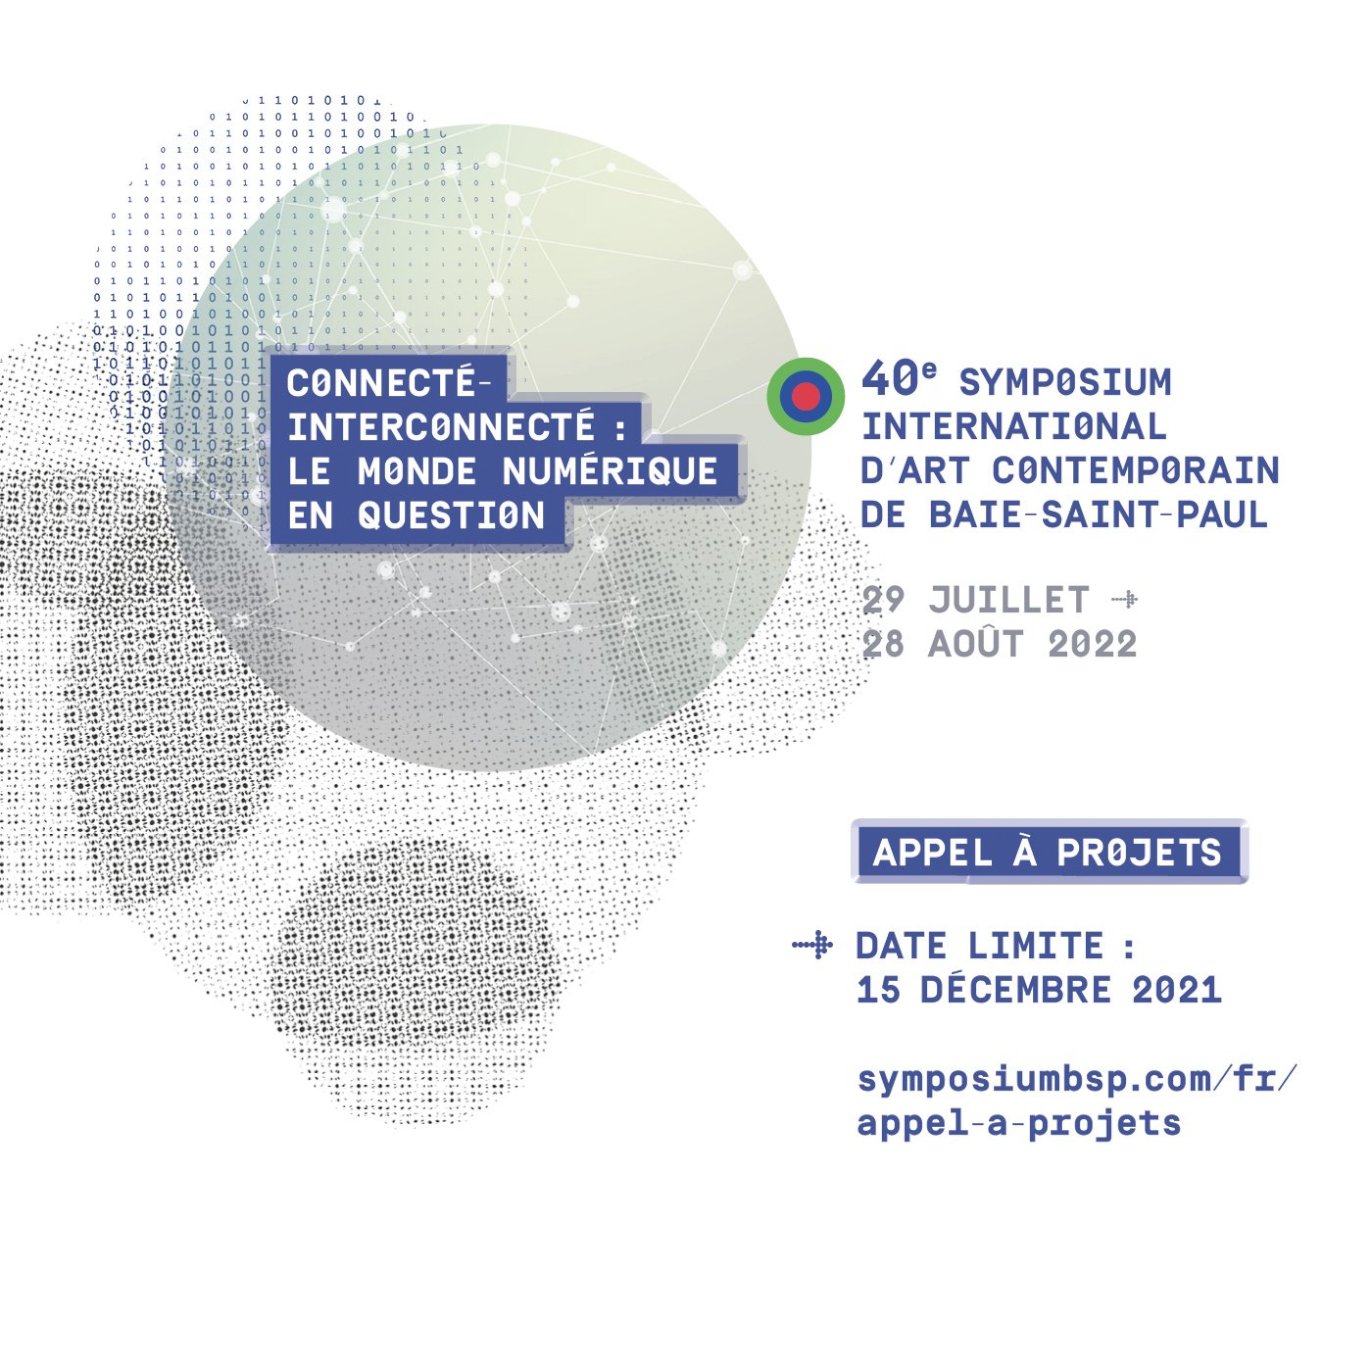 Le Musée d'art contemporain lance aujourd'hui l'appel à projets pour la 40è édition du Symposium